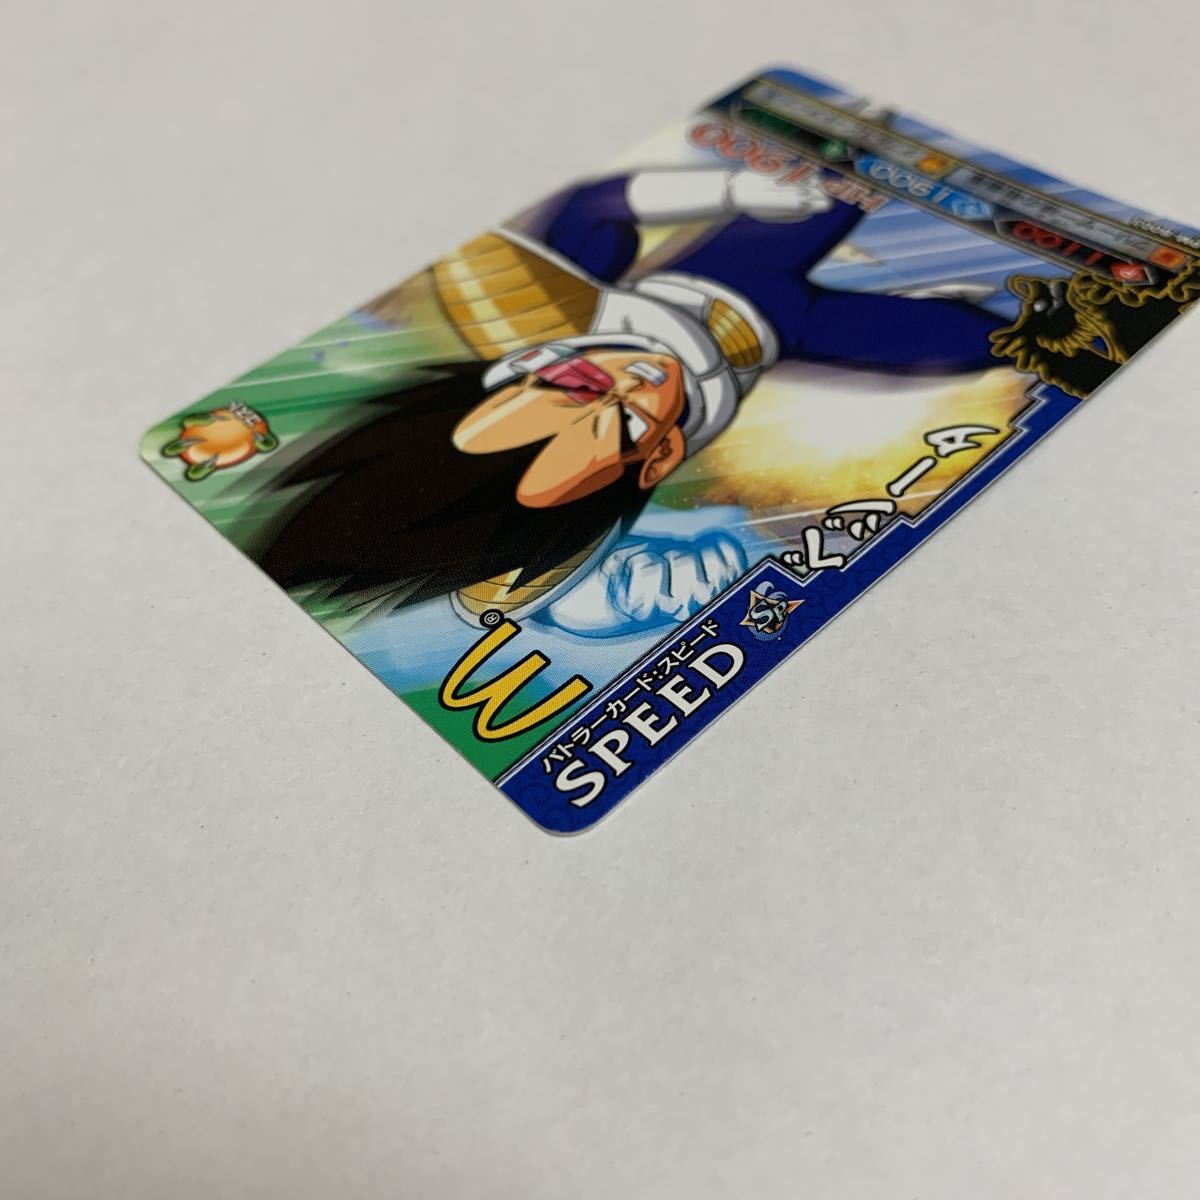  Dragon Ball Dragon Battlers DRAGONBALL карта коллекционные карточки Vegeta PM-B003 McDonald's 2009 Bandai не продается вскрыть товар прекрасный товар бесплатная доставка 